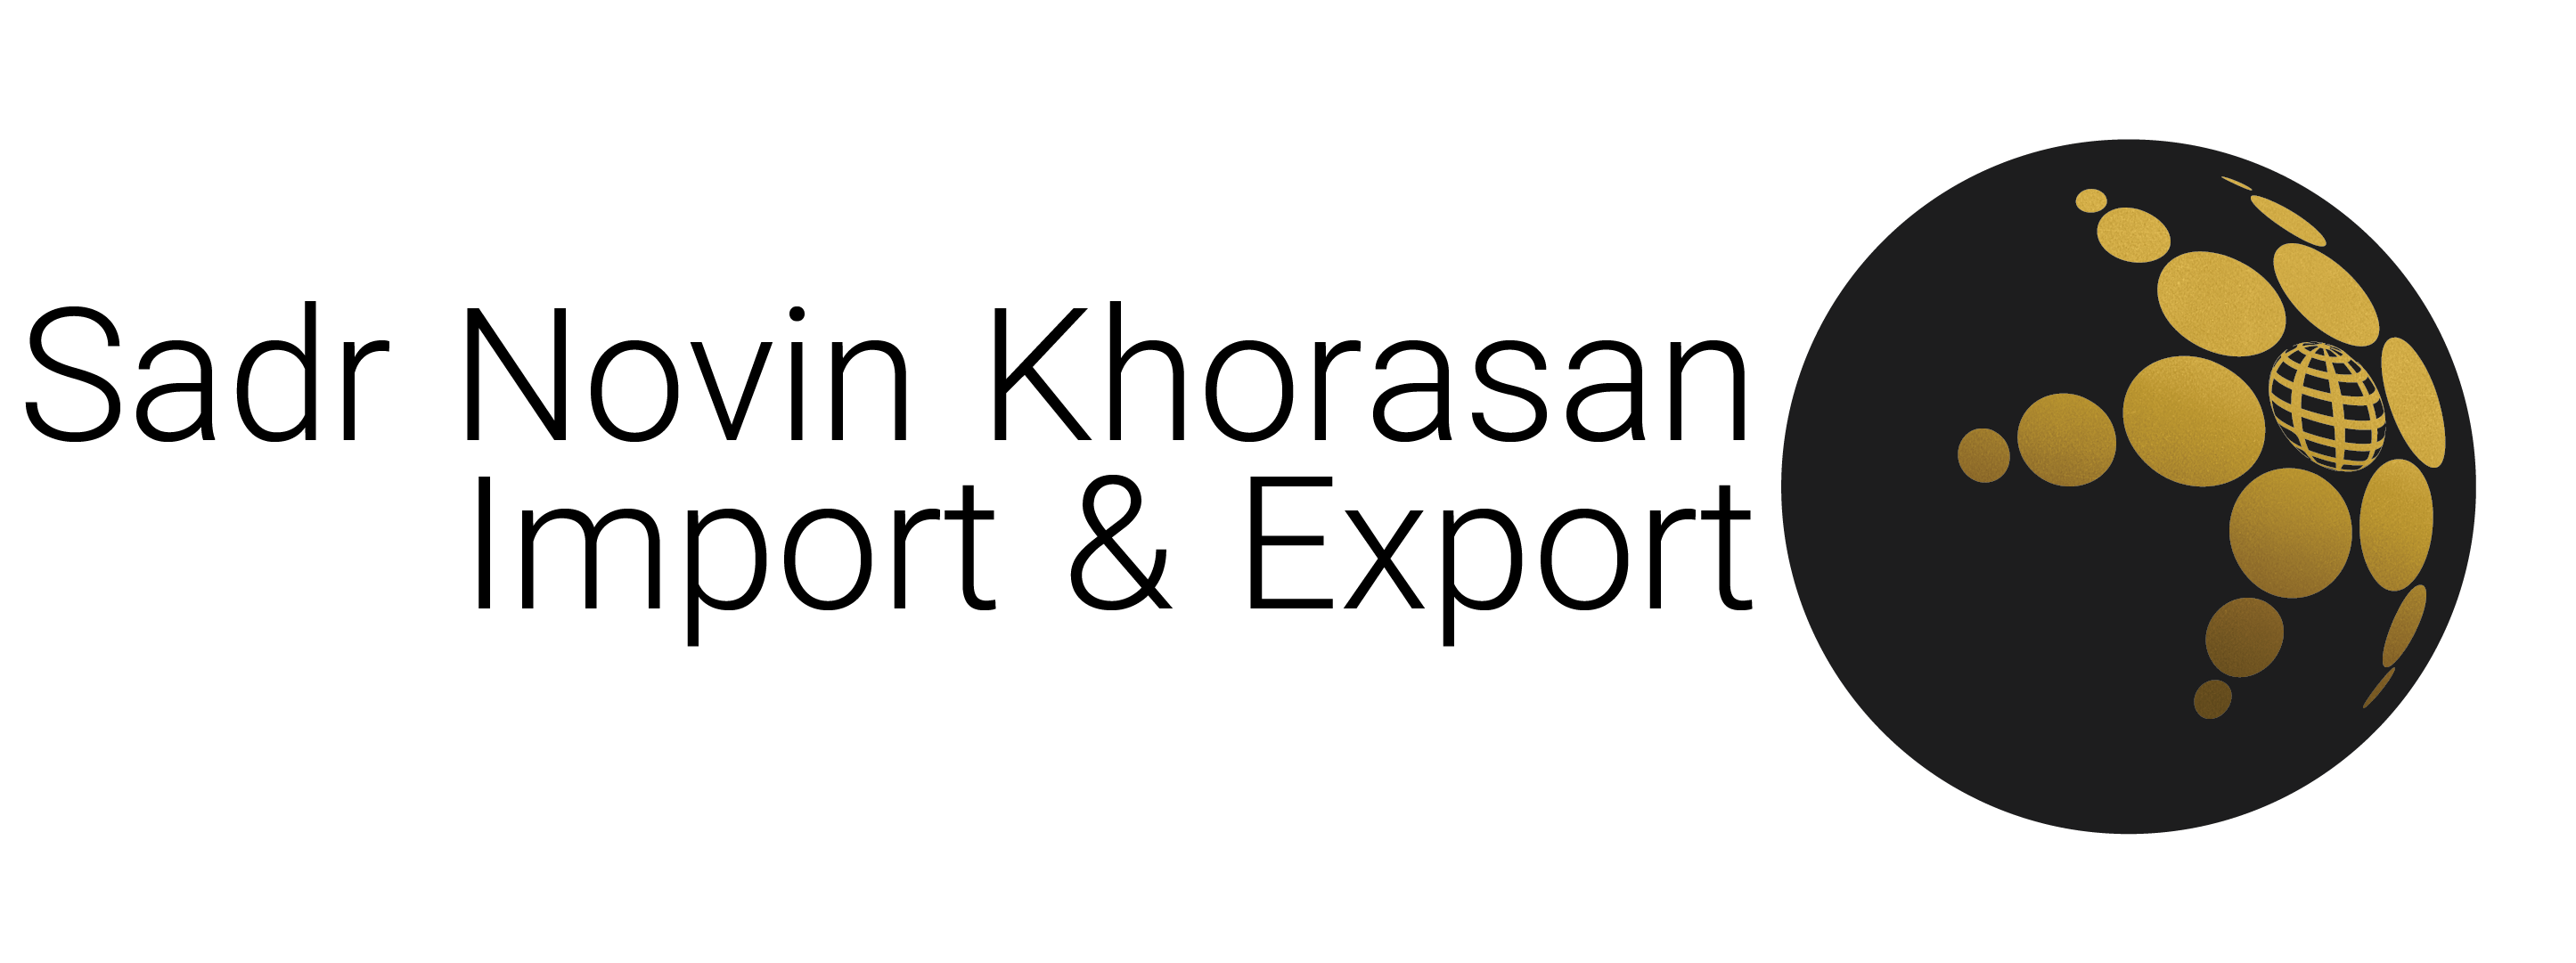 Sadr Novin Khorasan